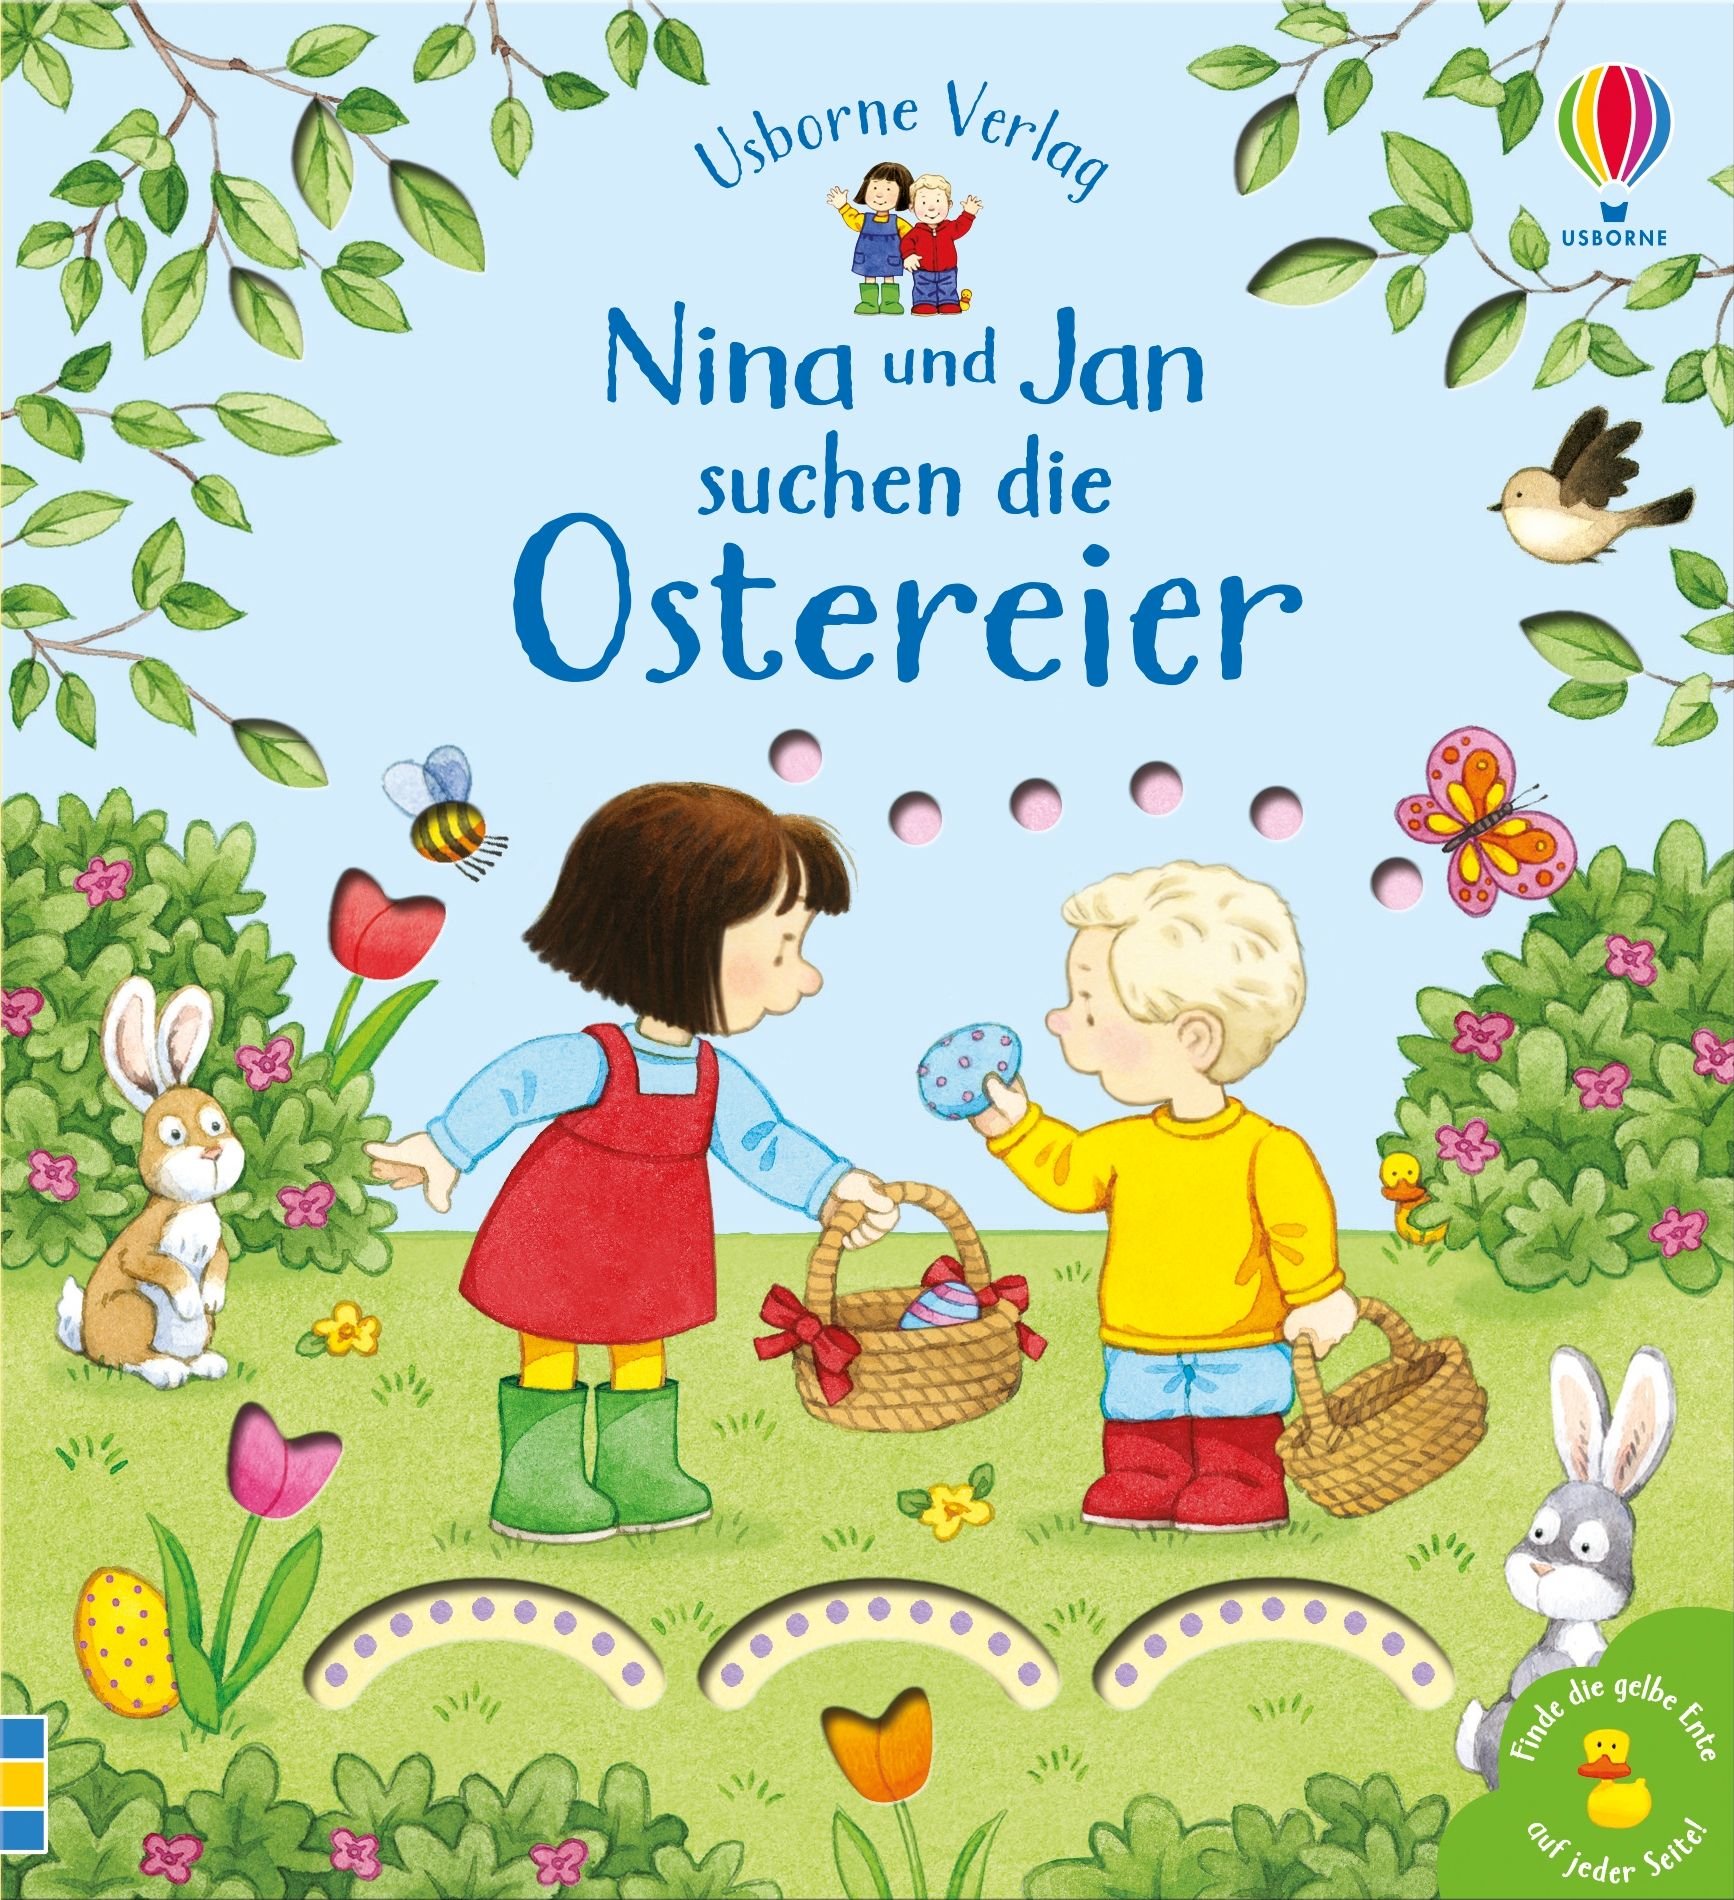 Buchcover "Nina und Jan suchen die Ostereier"